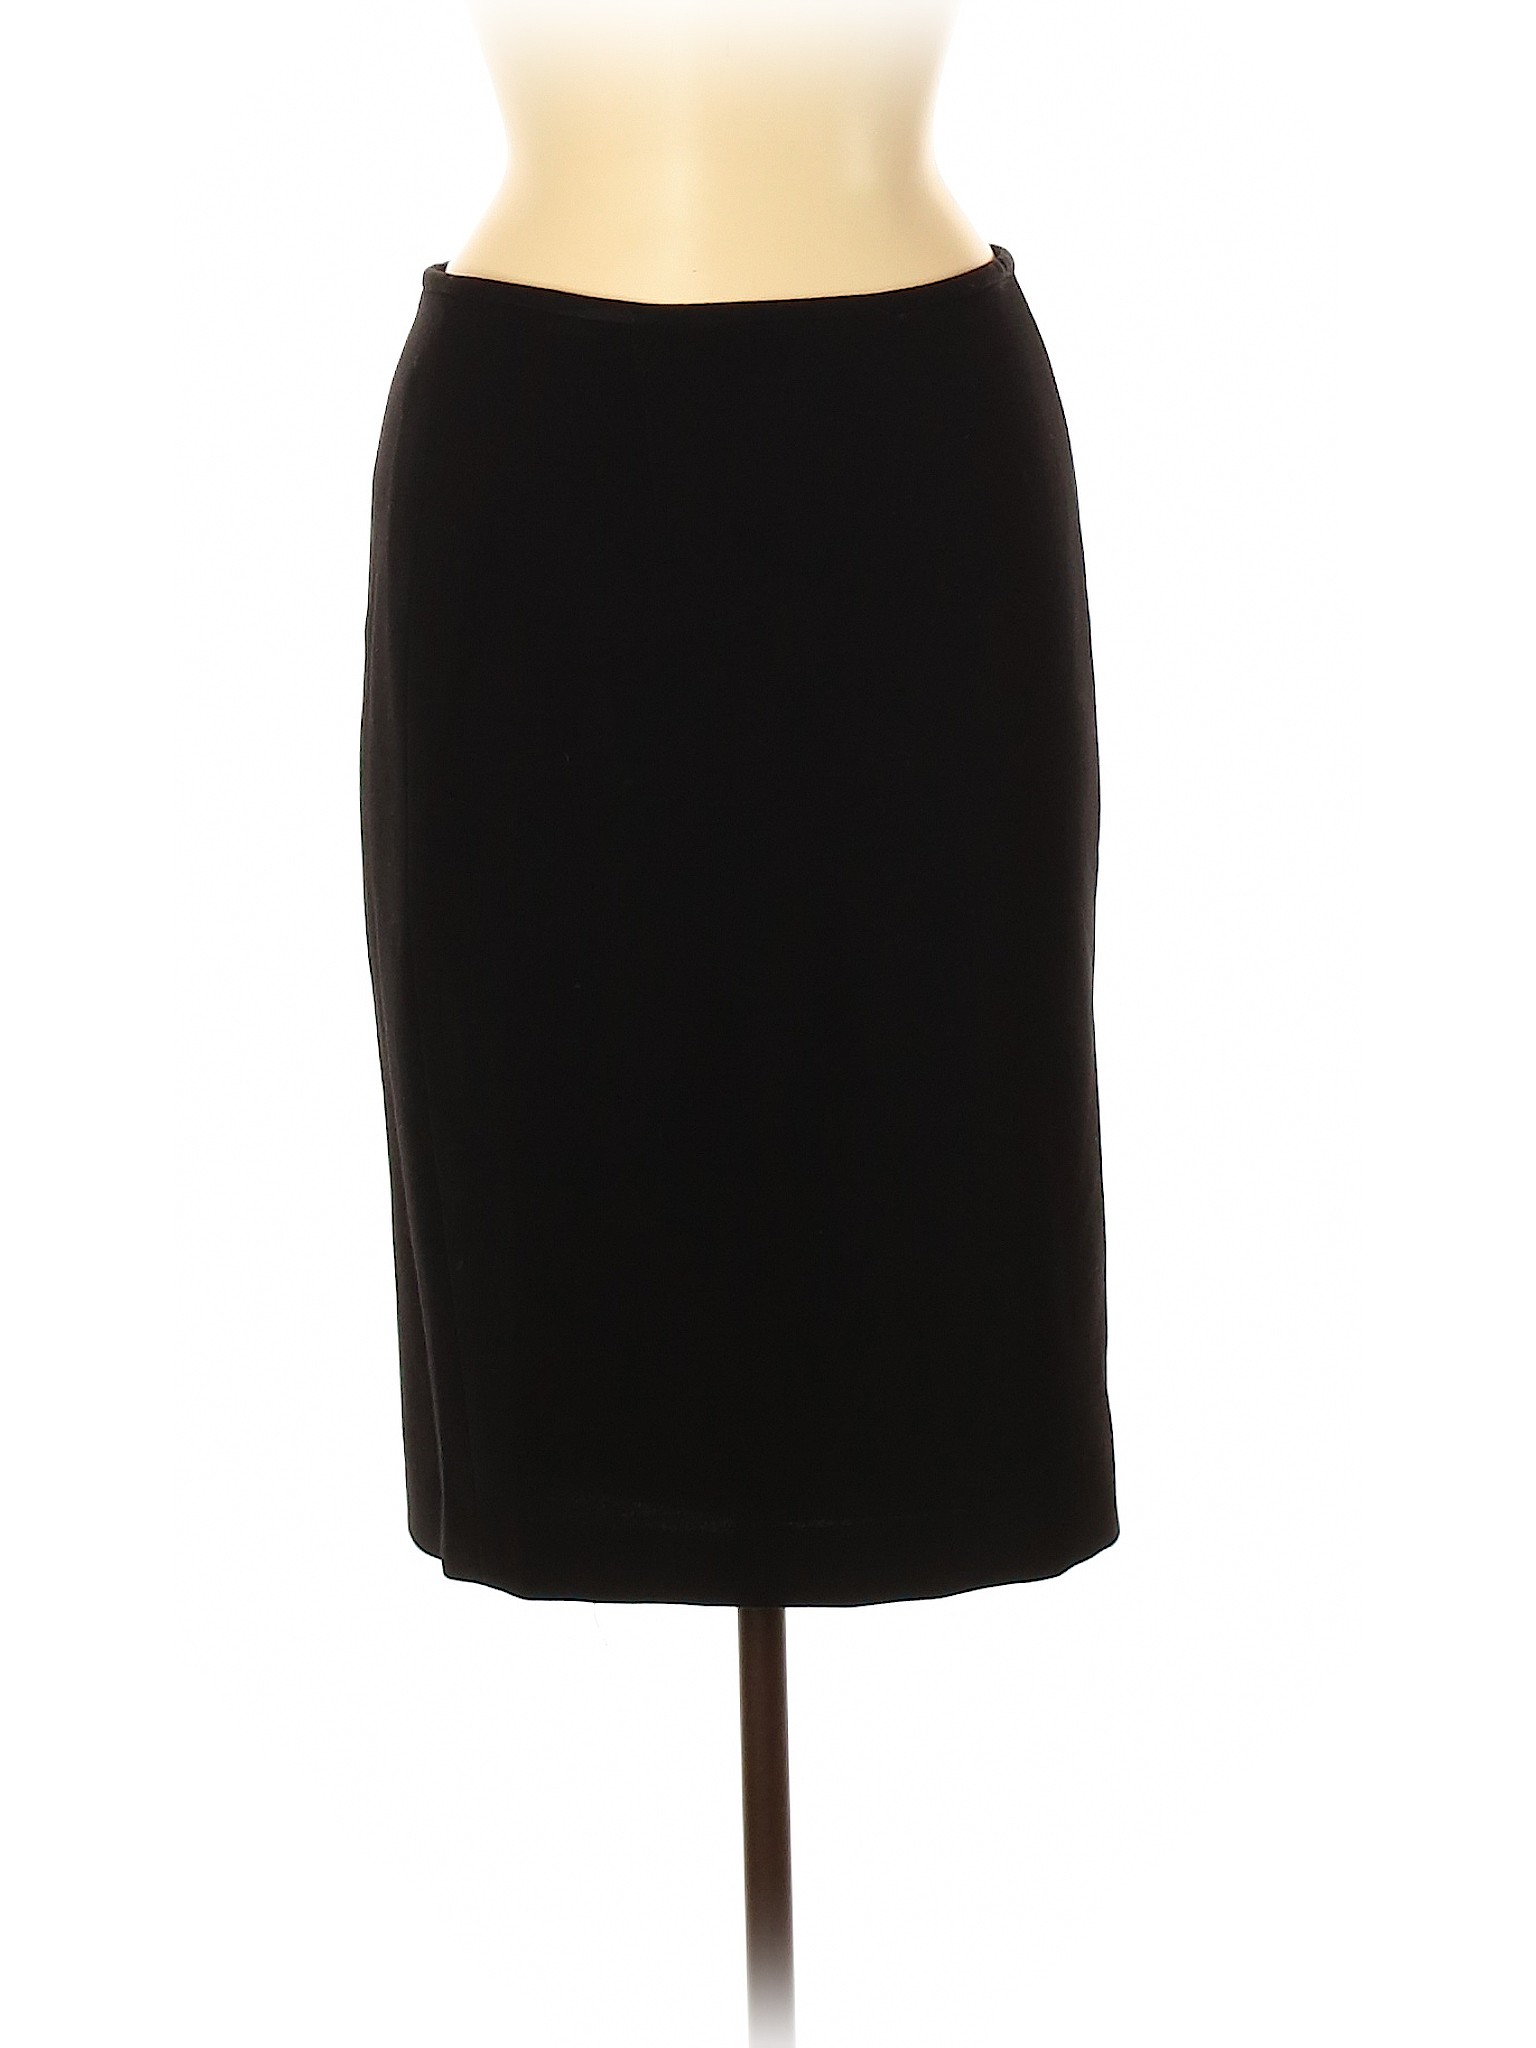 Calvin Klein Women Black Casual Skirt 2 | eBay